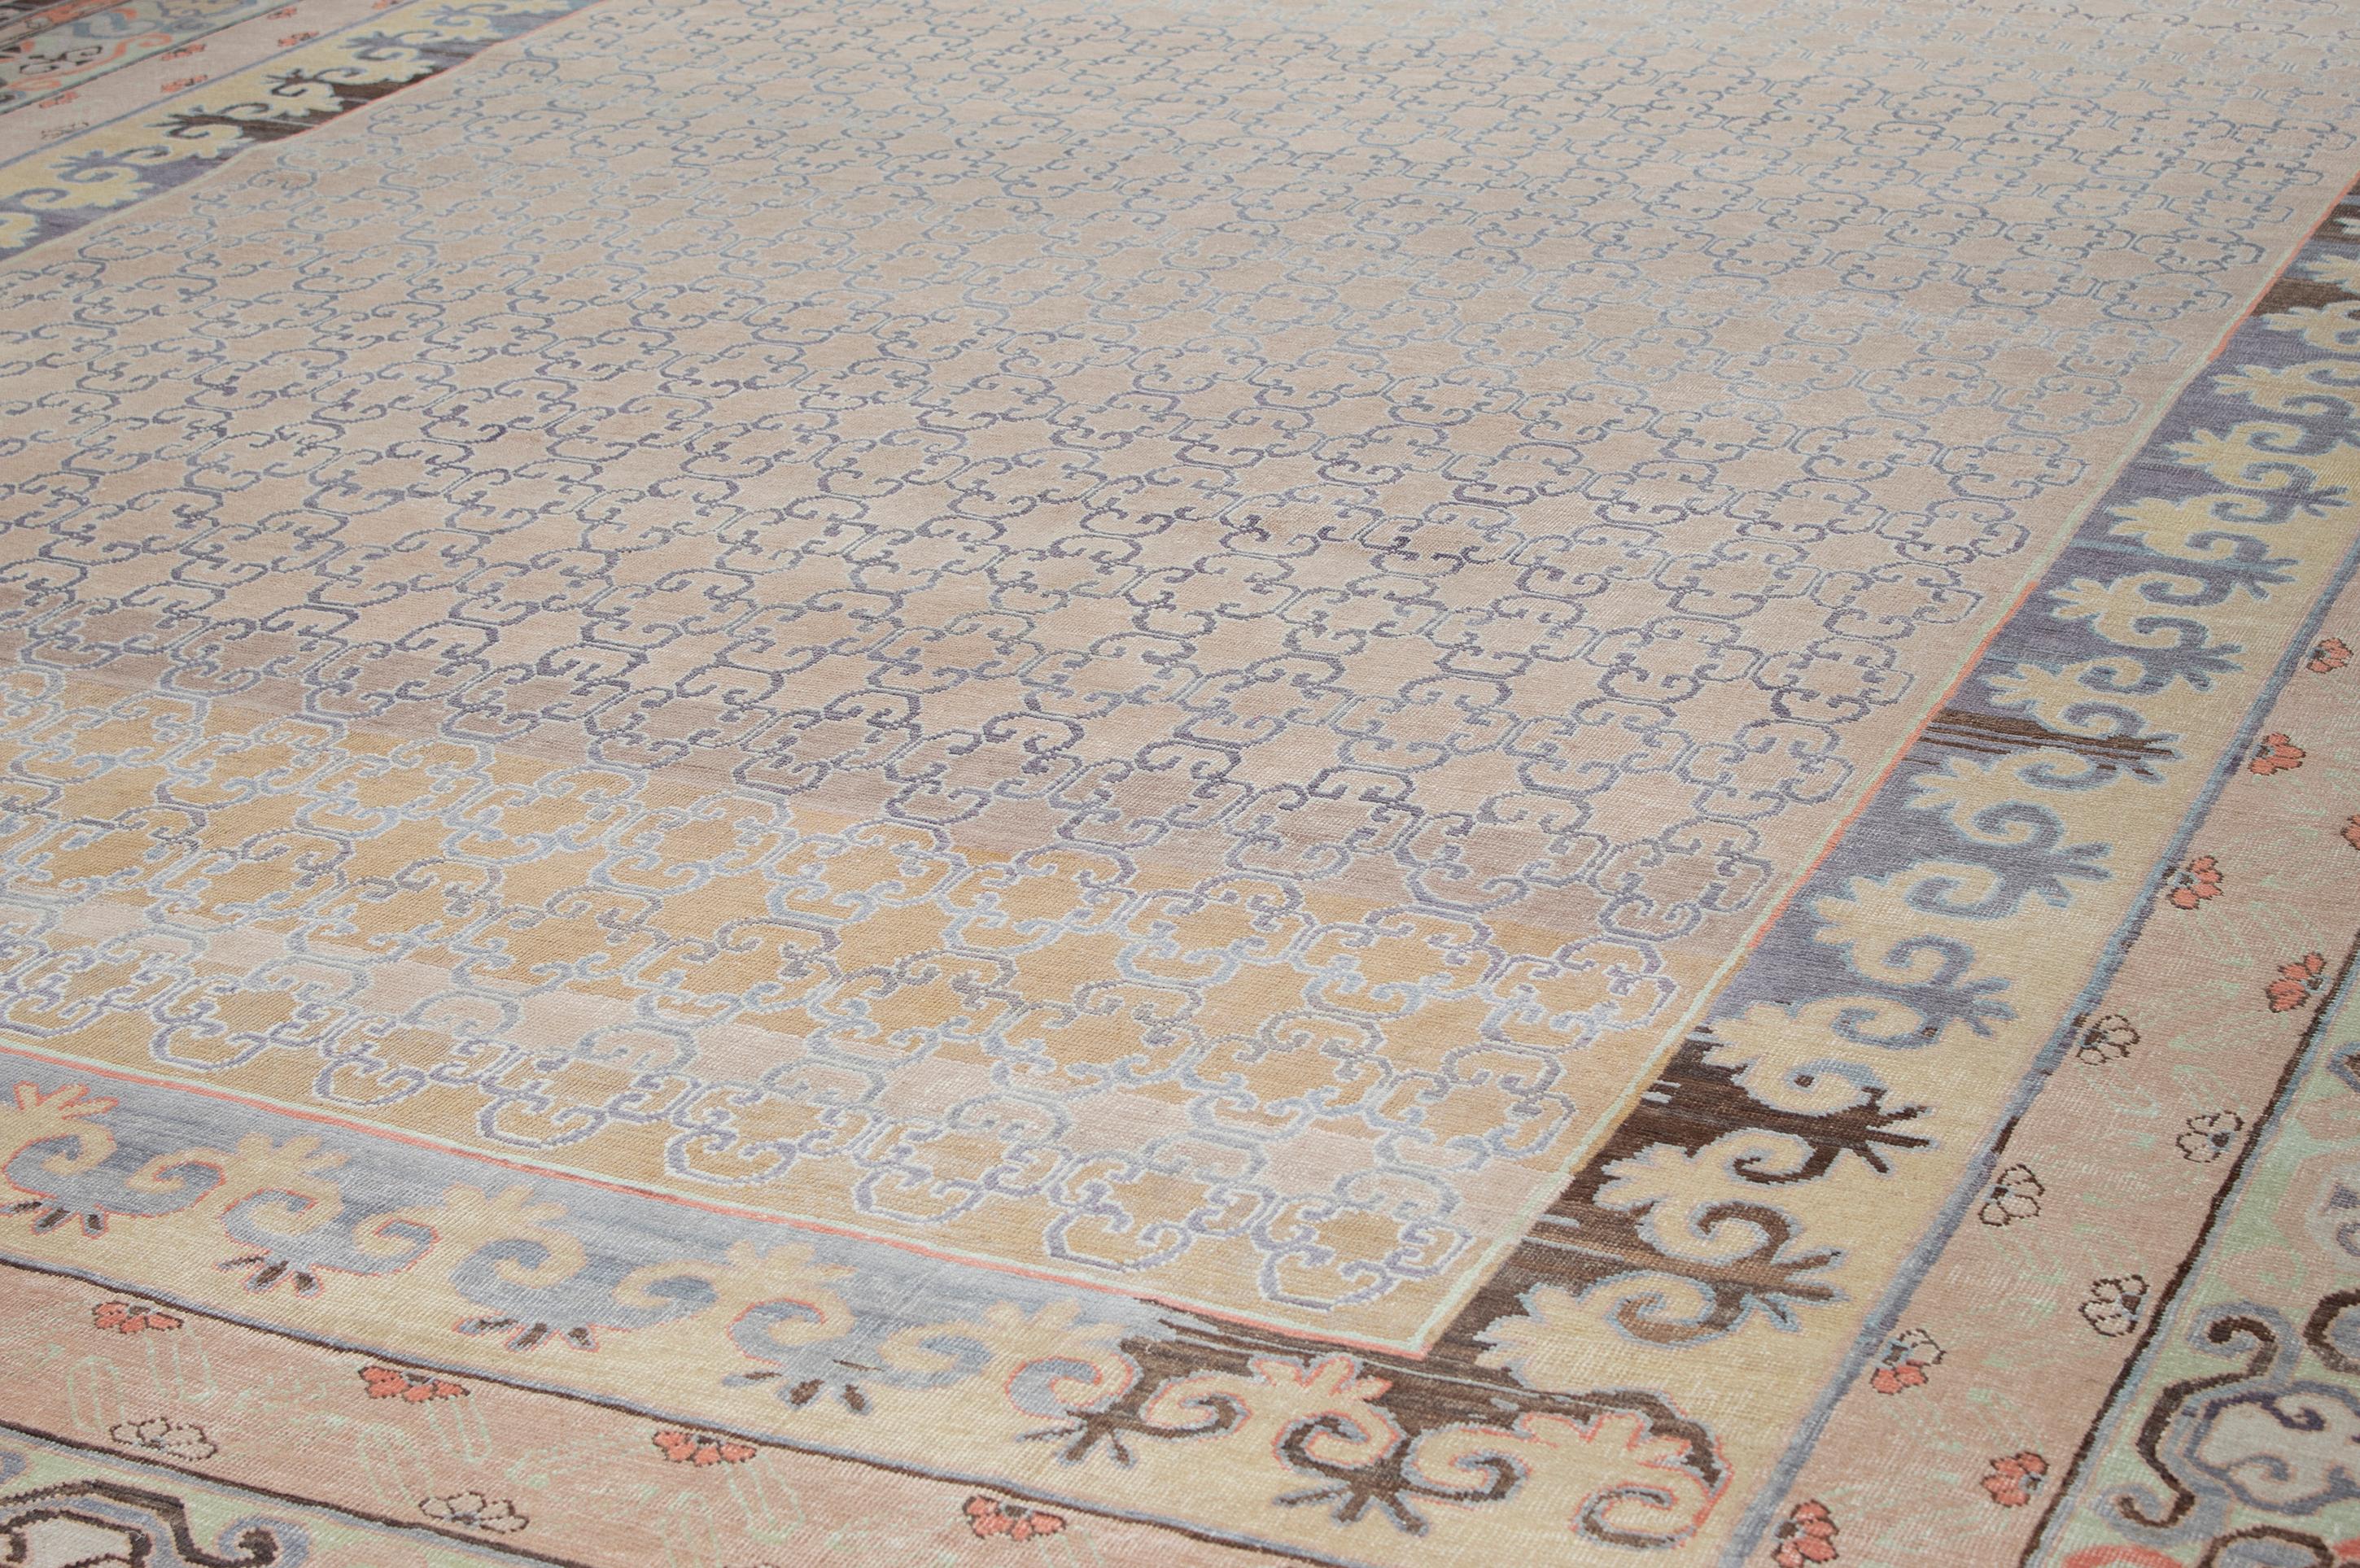 Dieser Teppich ähnelt den seltenen und sammelwürdigen antiken Khotan-Teppichen, die im 19. Jahrhundert und früher in Ostturkestan hergestellt wurden und wegen ihrer Nähe zum gleichnamigen kulturellen Zentrum auch als Samarkand-Teppiche bezeichnet